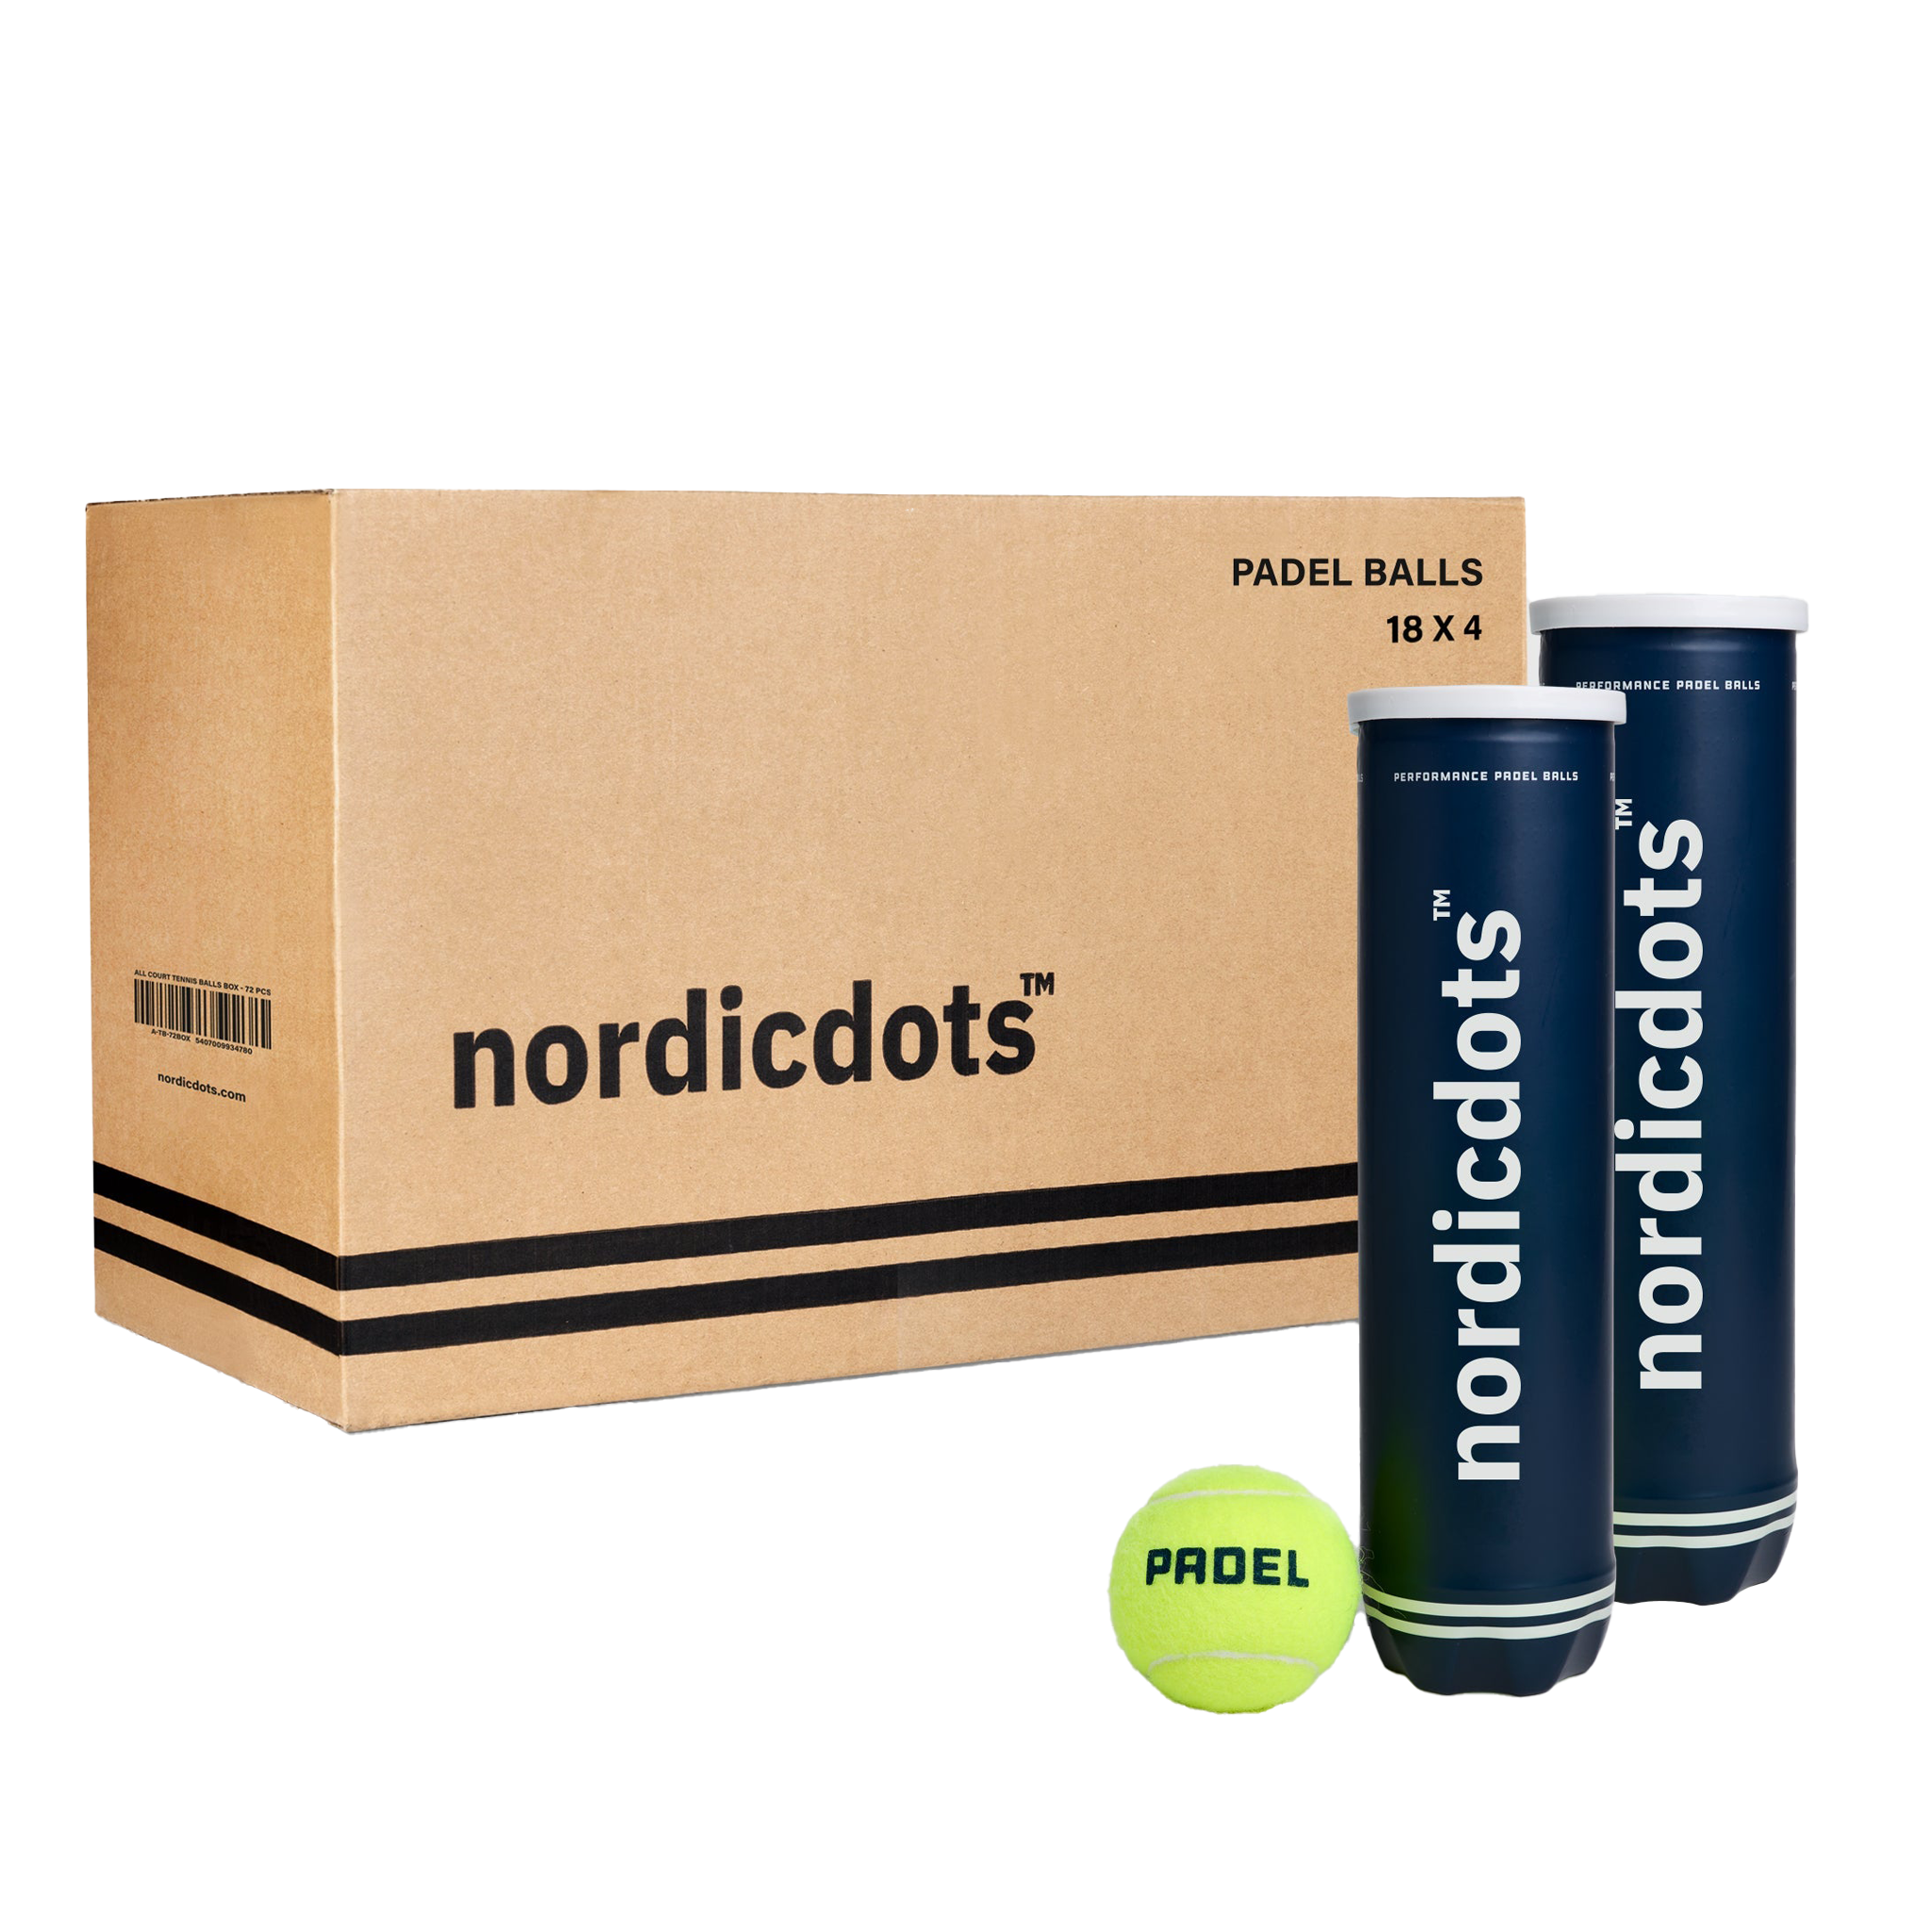 nordicdots Performance Padel Balls - 72 PCS